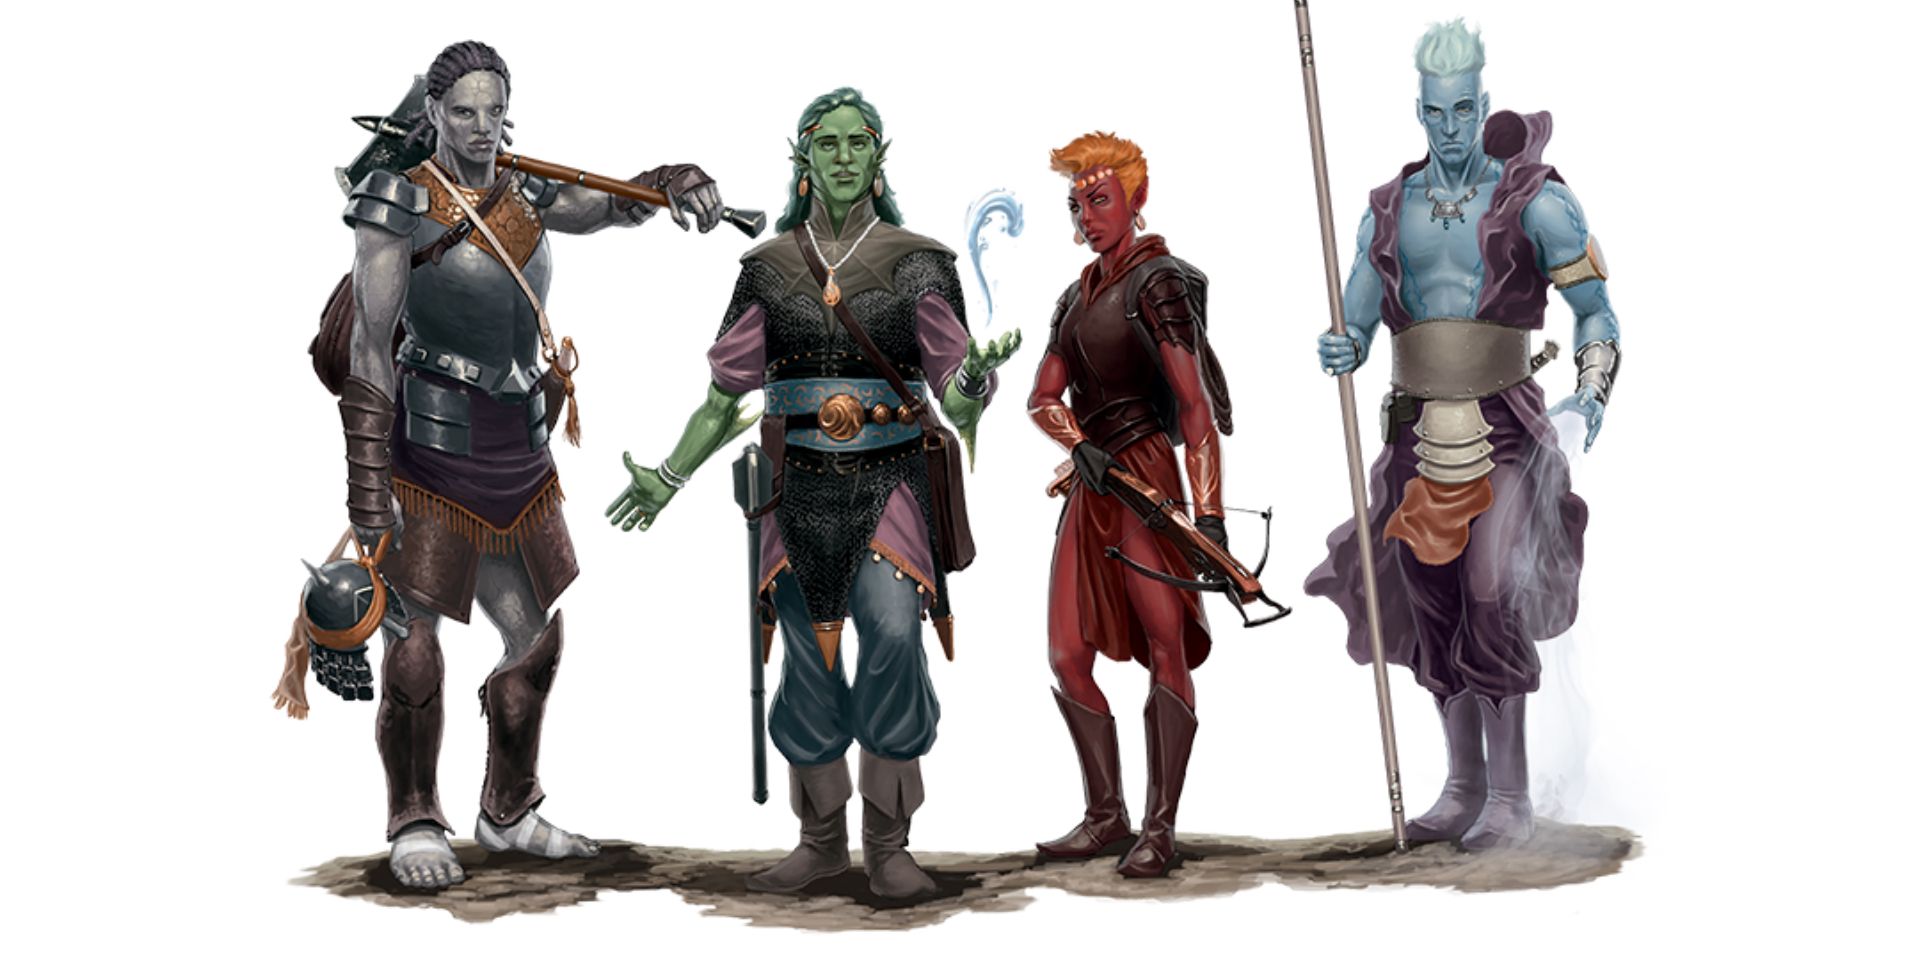 Quatro personagens de Dungeons & Dragons ficaram na frente de um fundo branco.